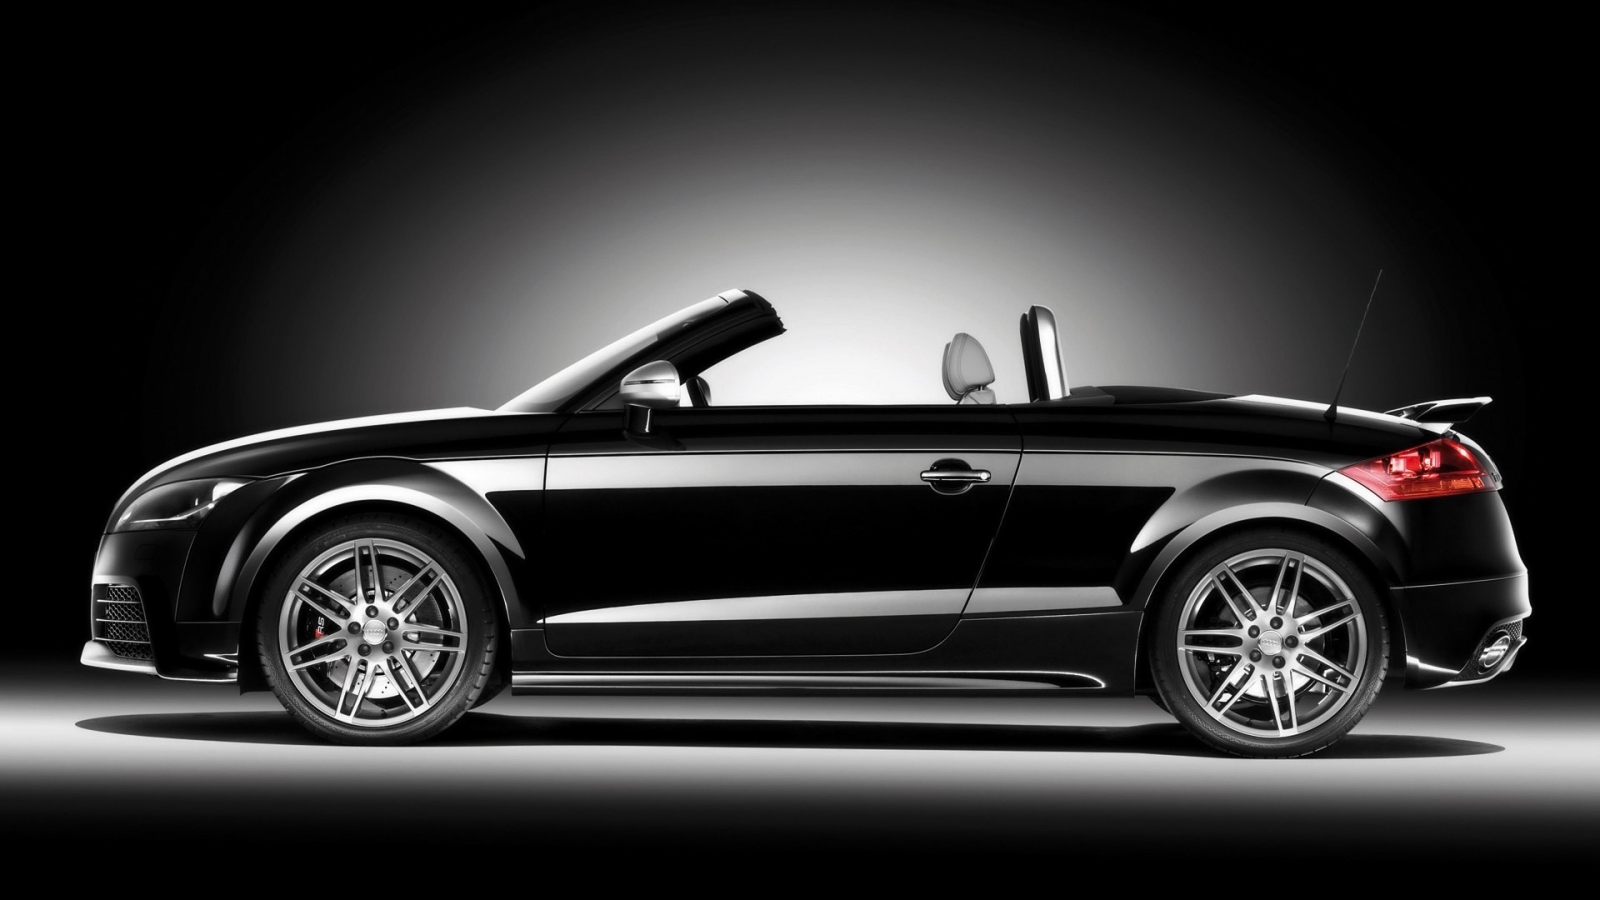 2009 Audi TT RS Roadster Black Side for 1600 x 900 HDTV resolution